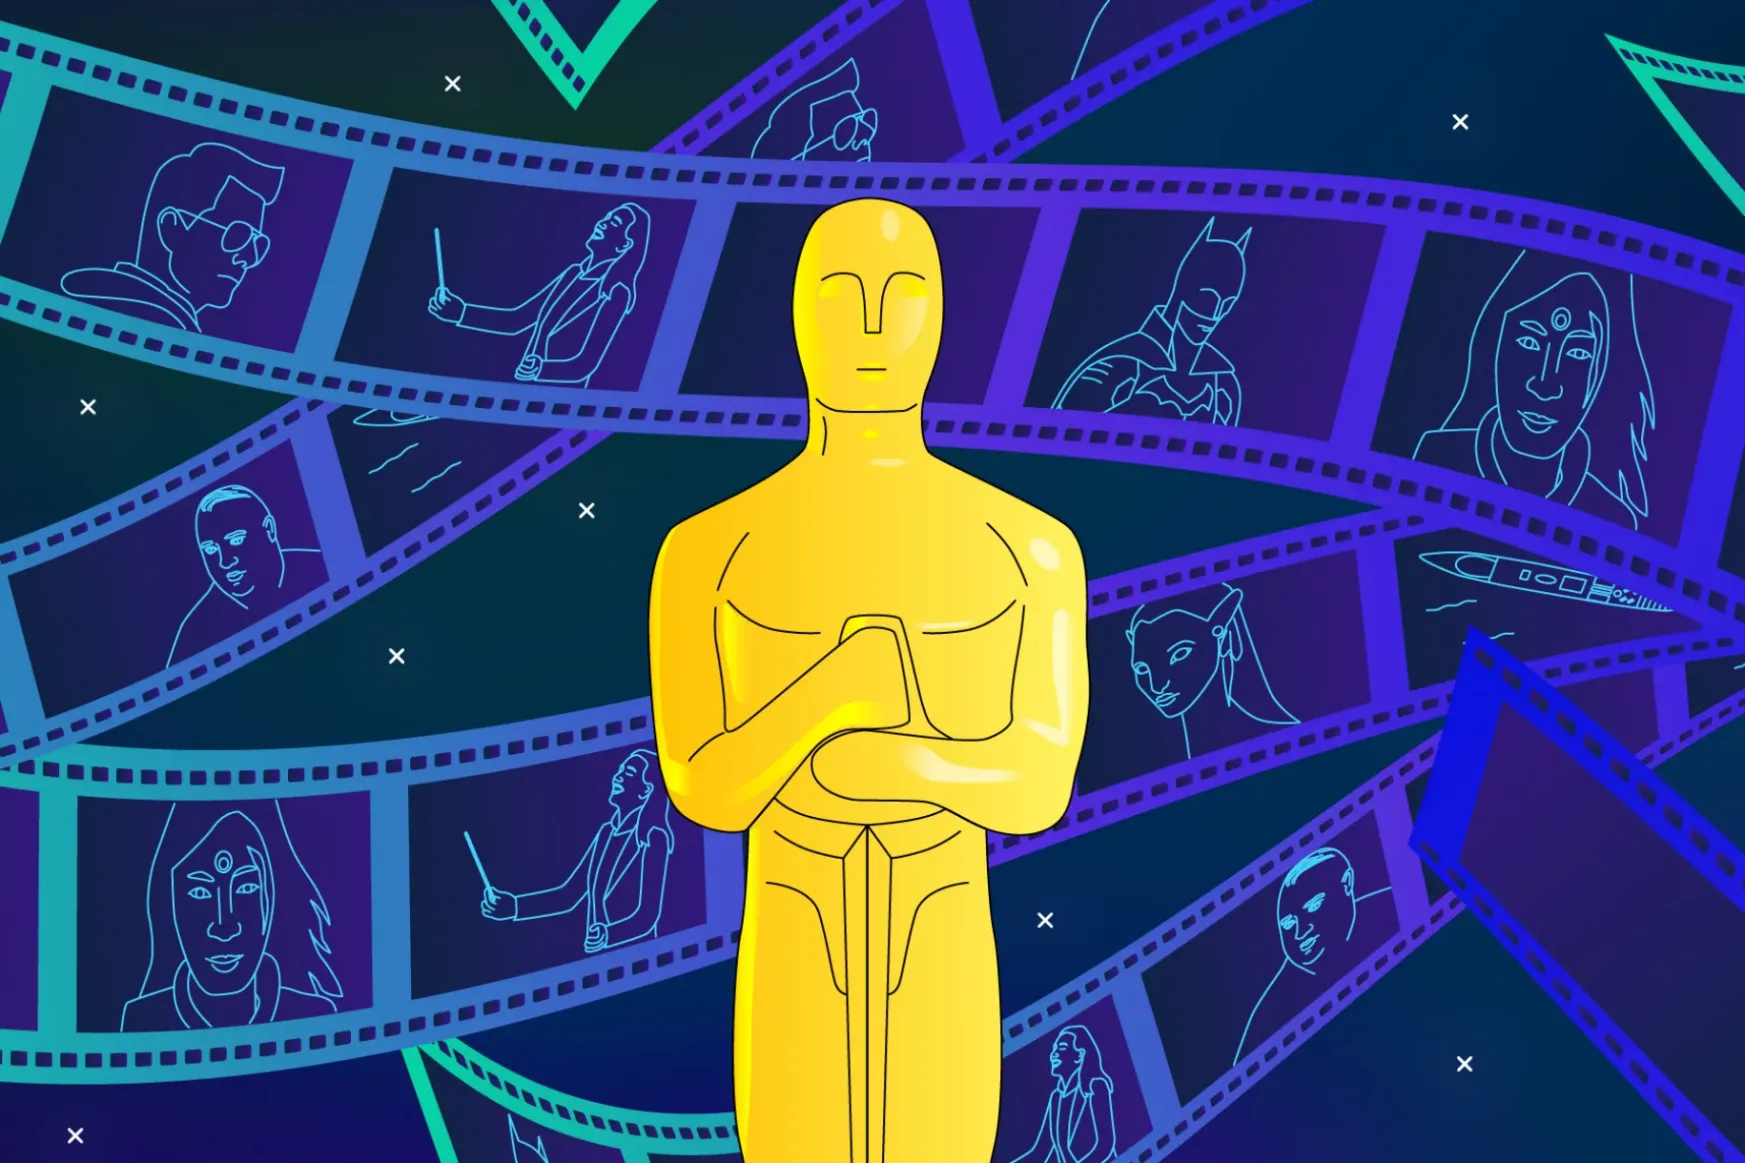 Ezek az idei Oscar-jelölt filmek – mit érdemes tudni róluk?